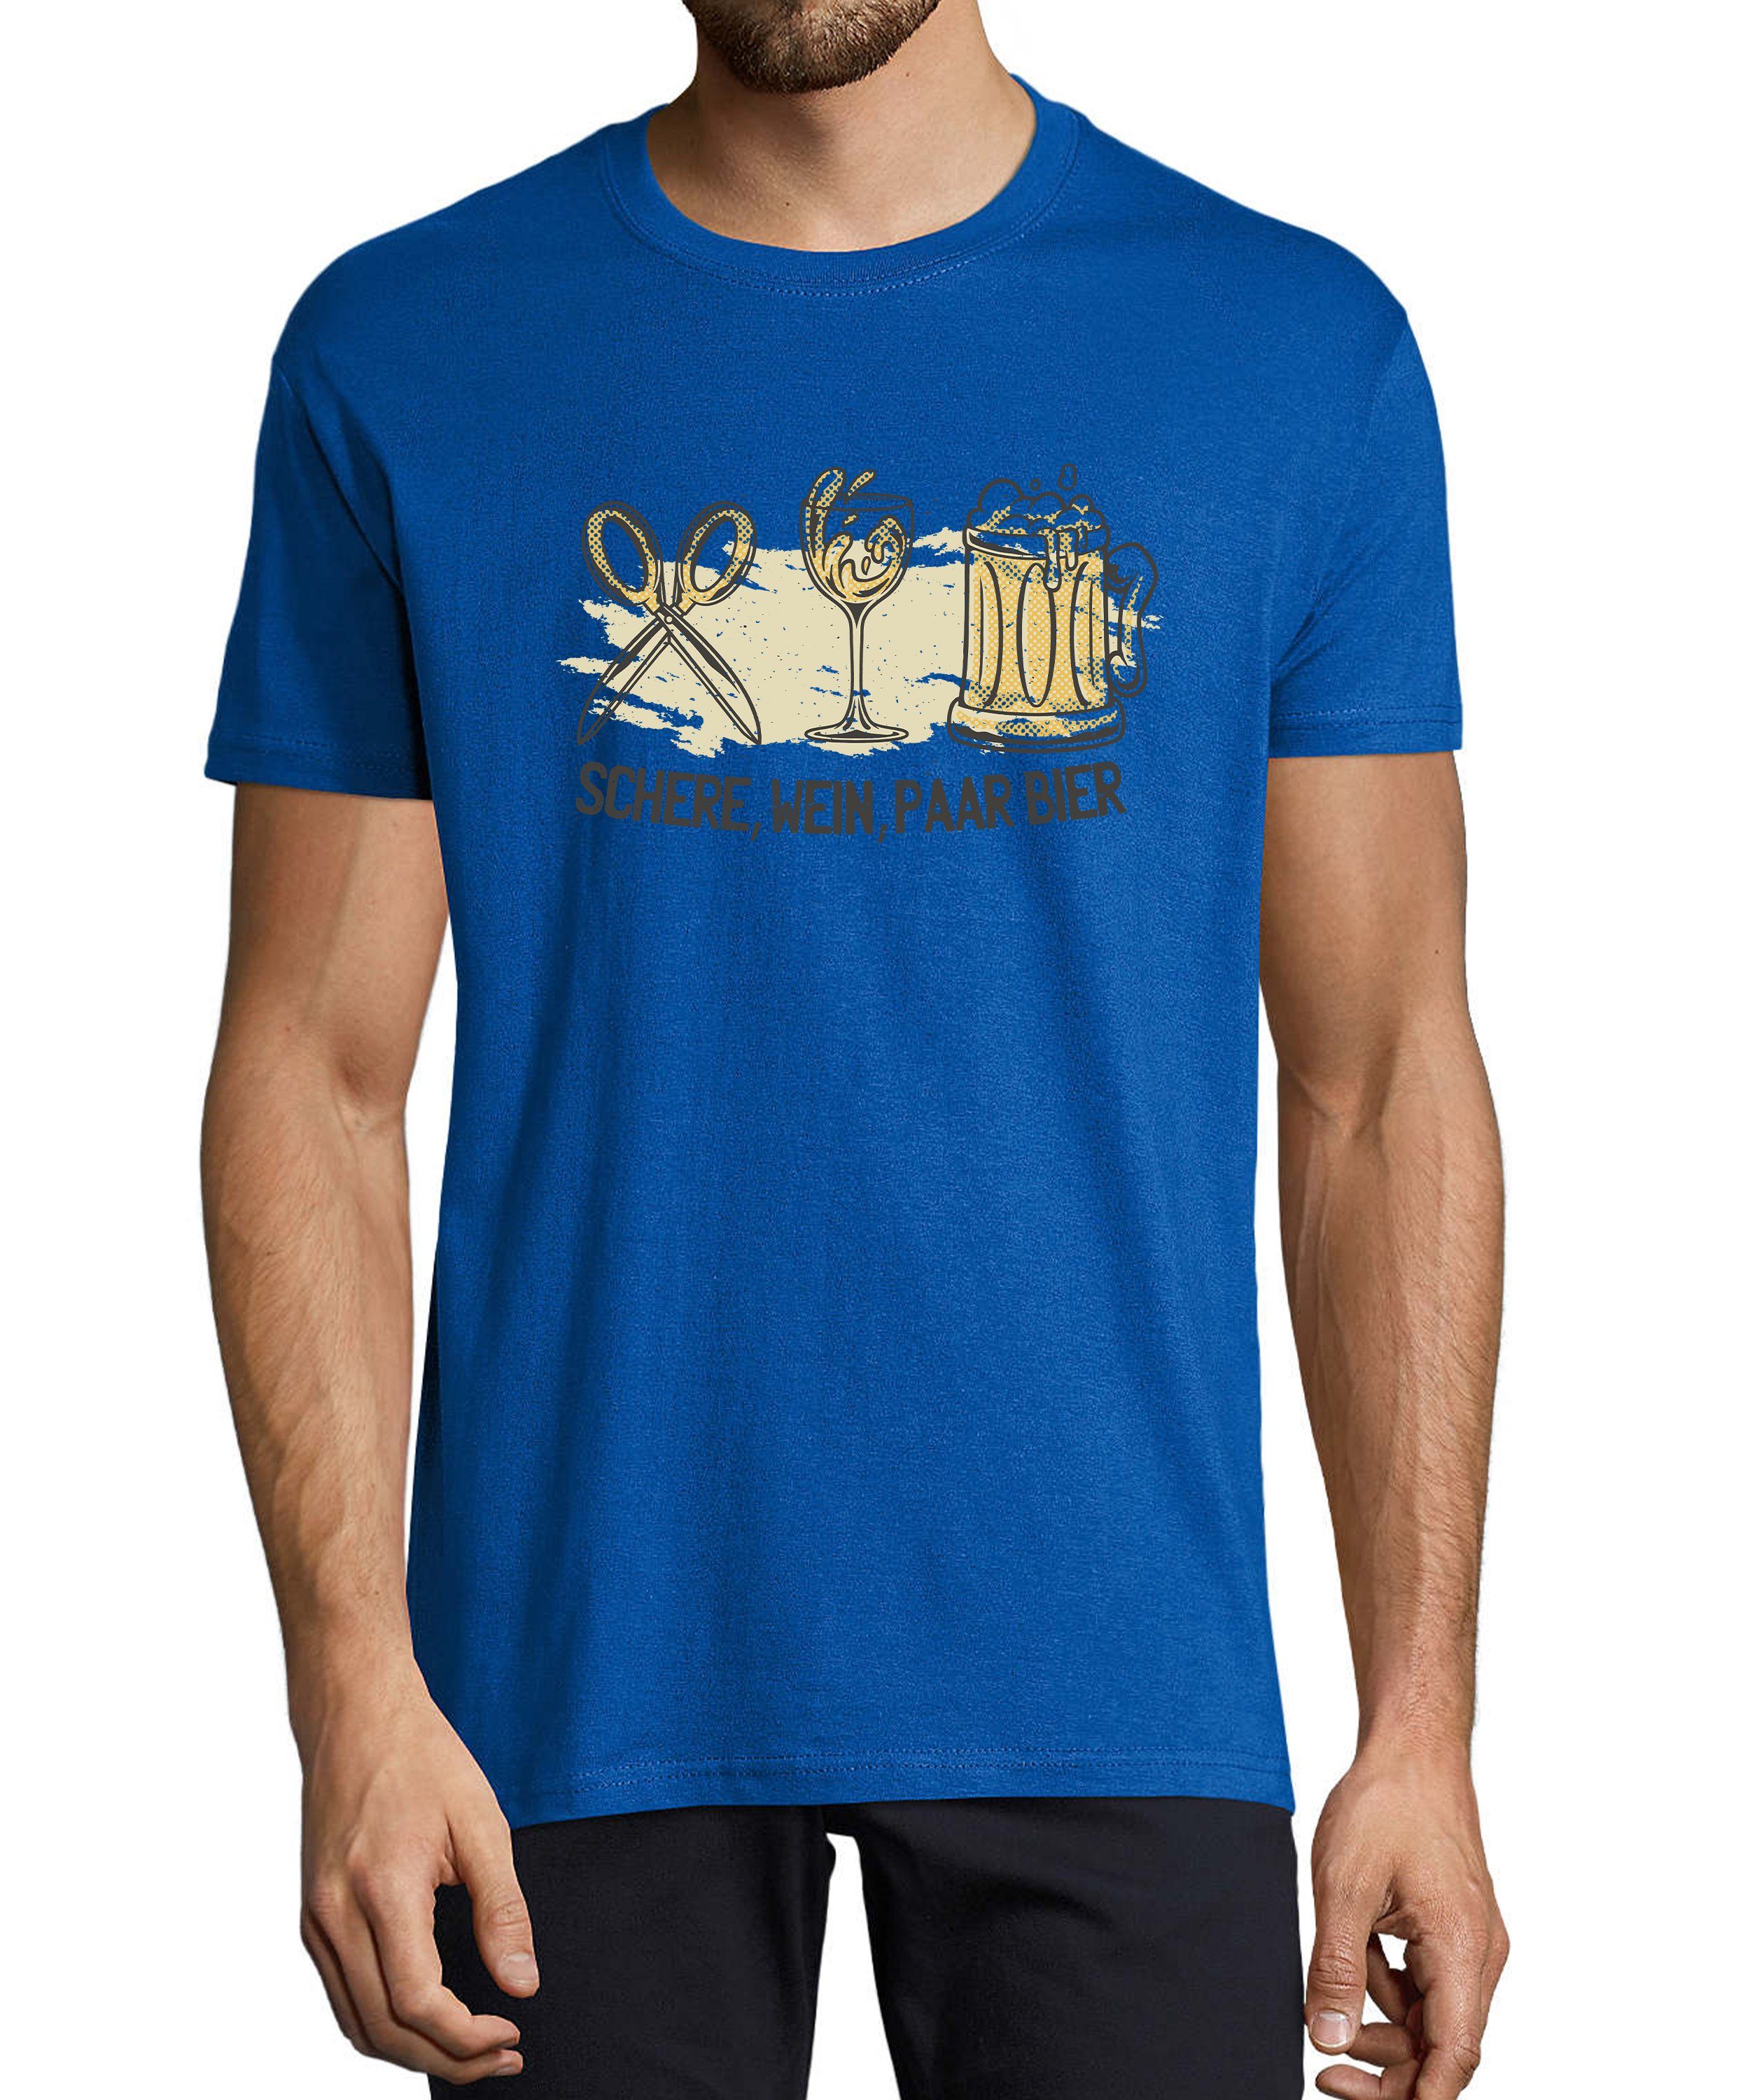 MyDesign24 T-Shirt Herren Sprüche Shirt - Trinkshirt Schere, Wein, Paar Bier Baumwollshirt mit Aufdruck Regular Fit, i321 royal blau